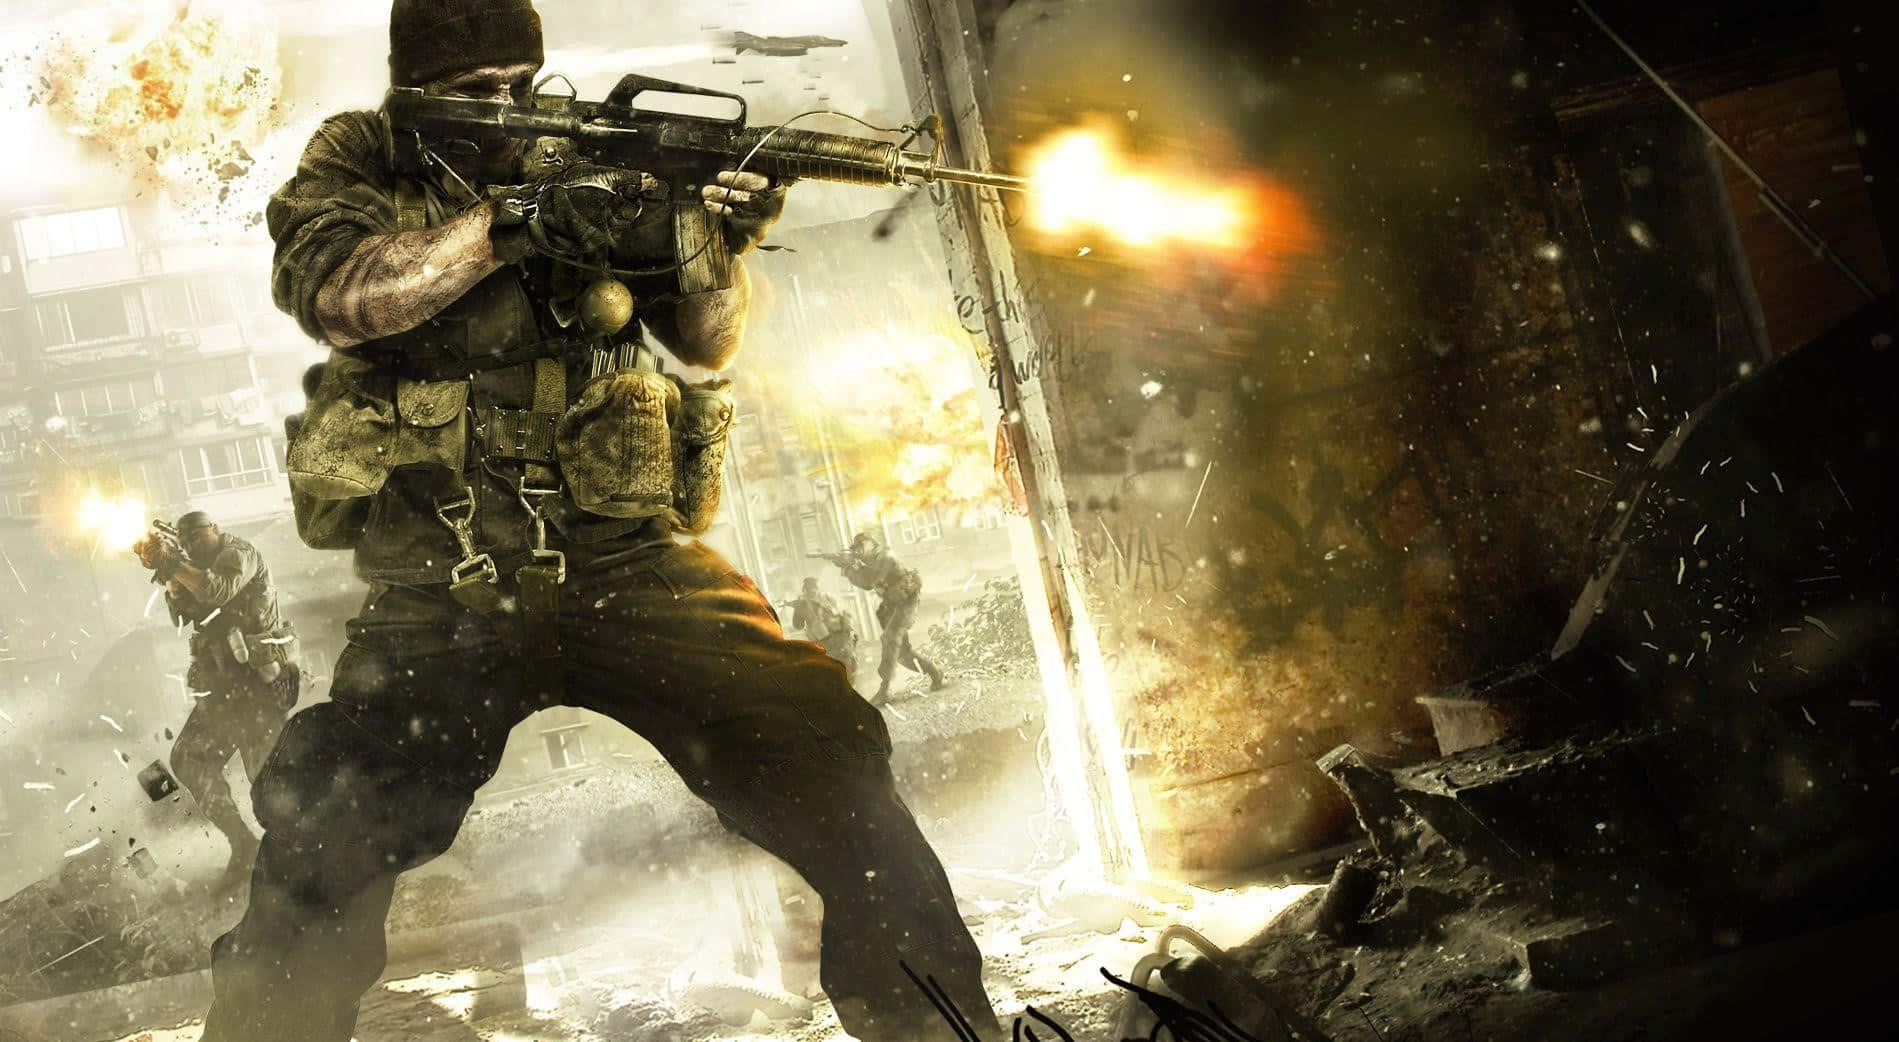 Hintergrundvon Call Of Duty Black Ops 4